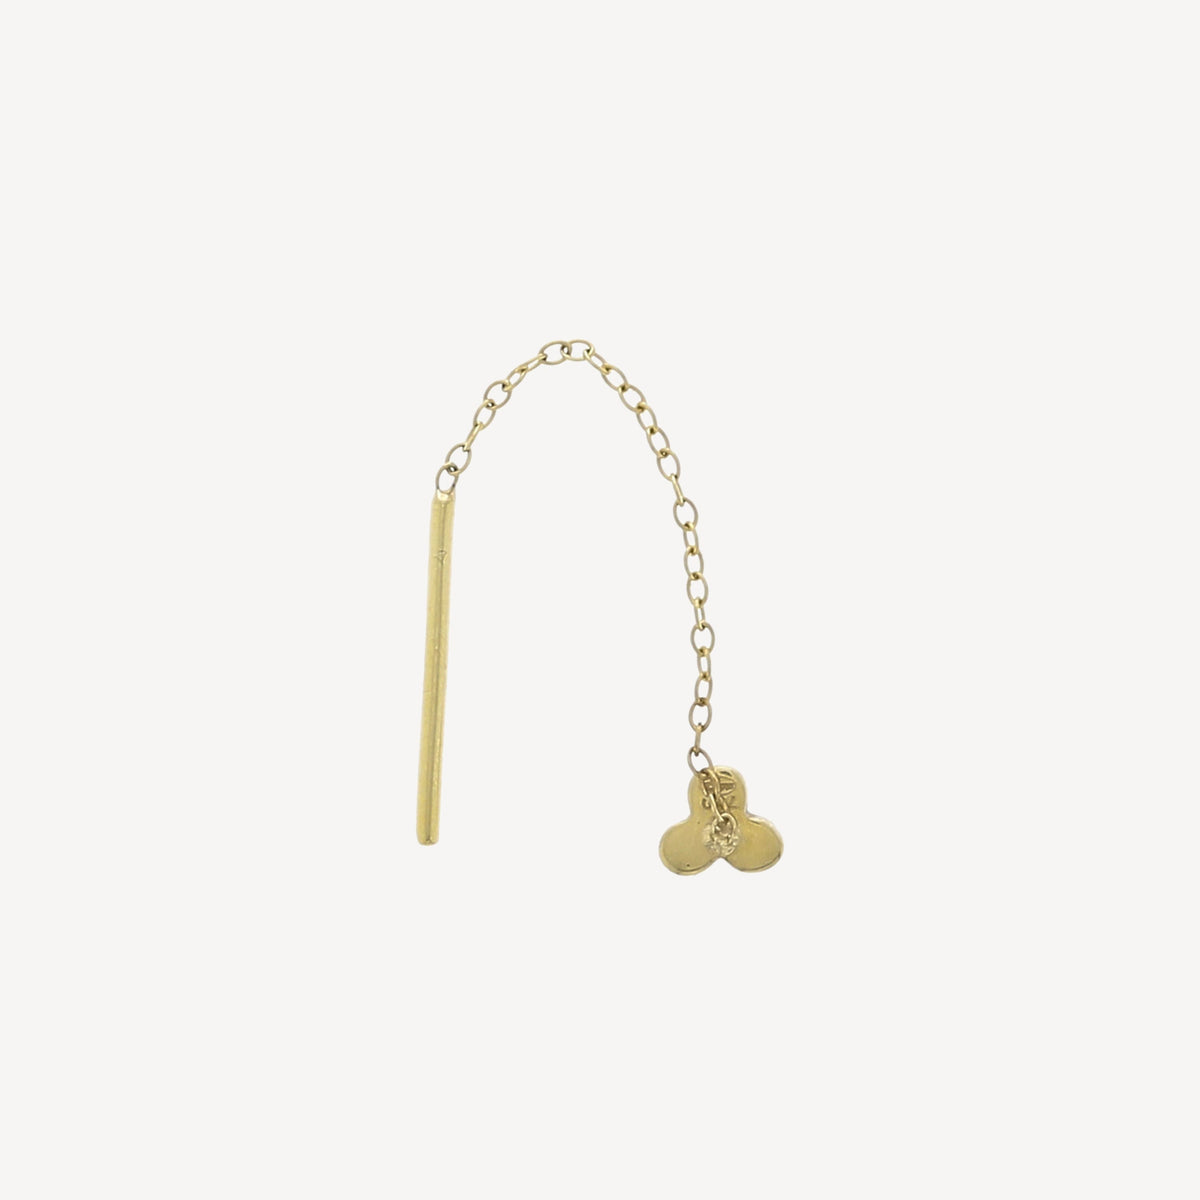 Mini cadenas – Sass bijoux Paris